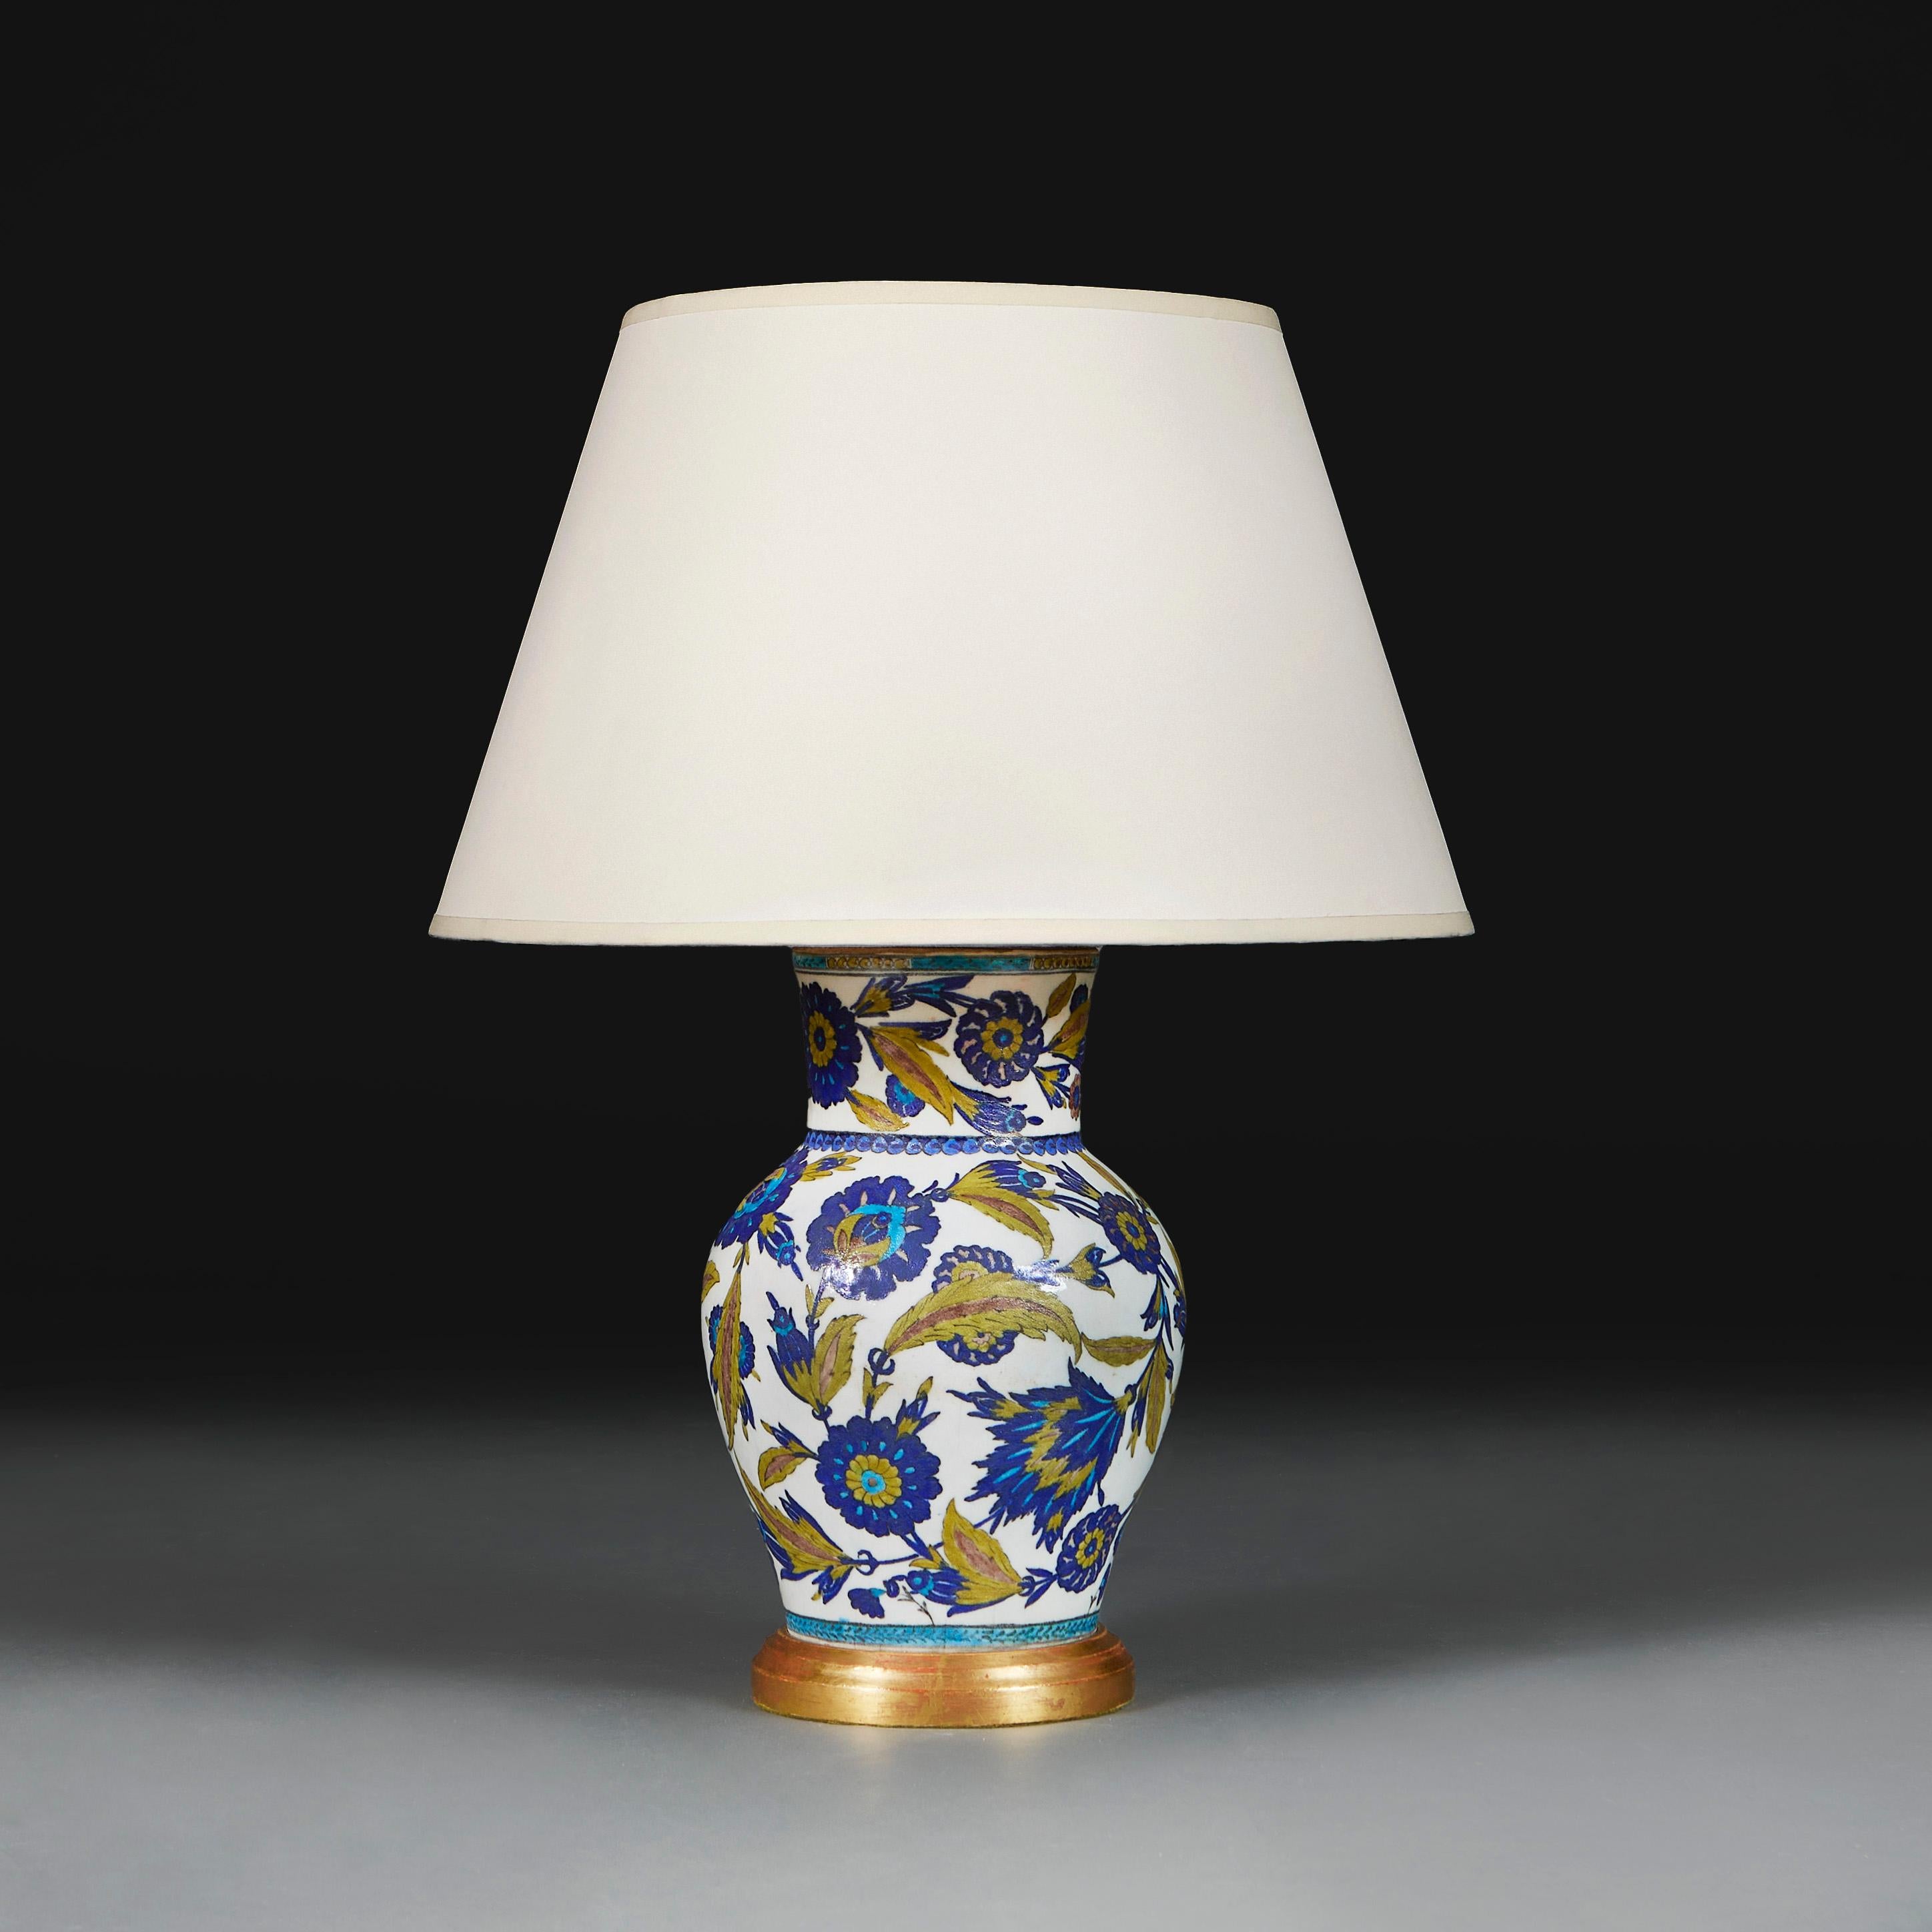 Italien, um 1890

Vase aus dem späten neunzehnten Jahrhundert, verziert mit Arabesken aus grünen Saz-Blättern  und blauen Nelken auf weißem Grund, jetzt umgewandelt in eine Lampe mit vergoldetem Sockel. 

Höhe der Vase 30.00cm

Höhe mit Schirm